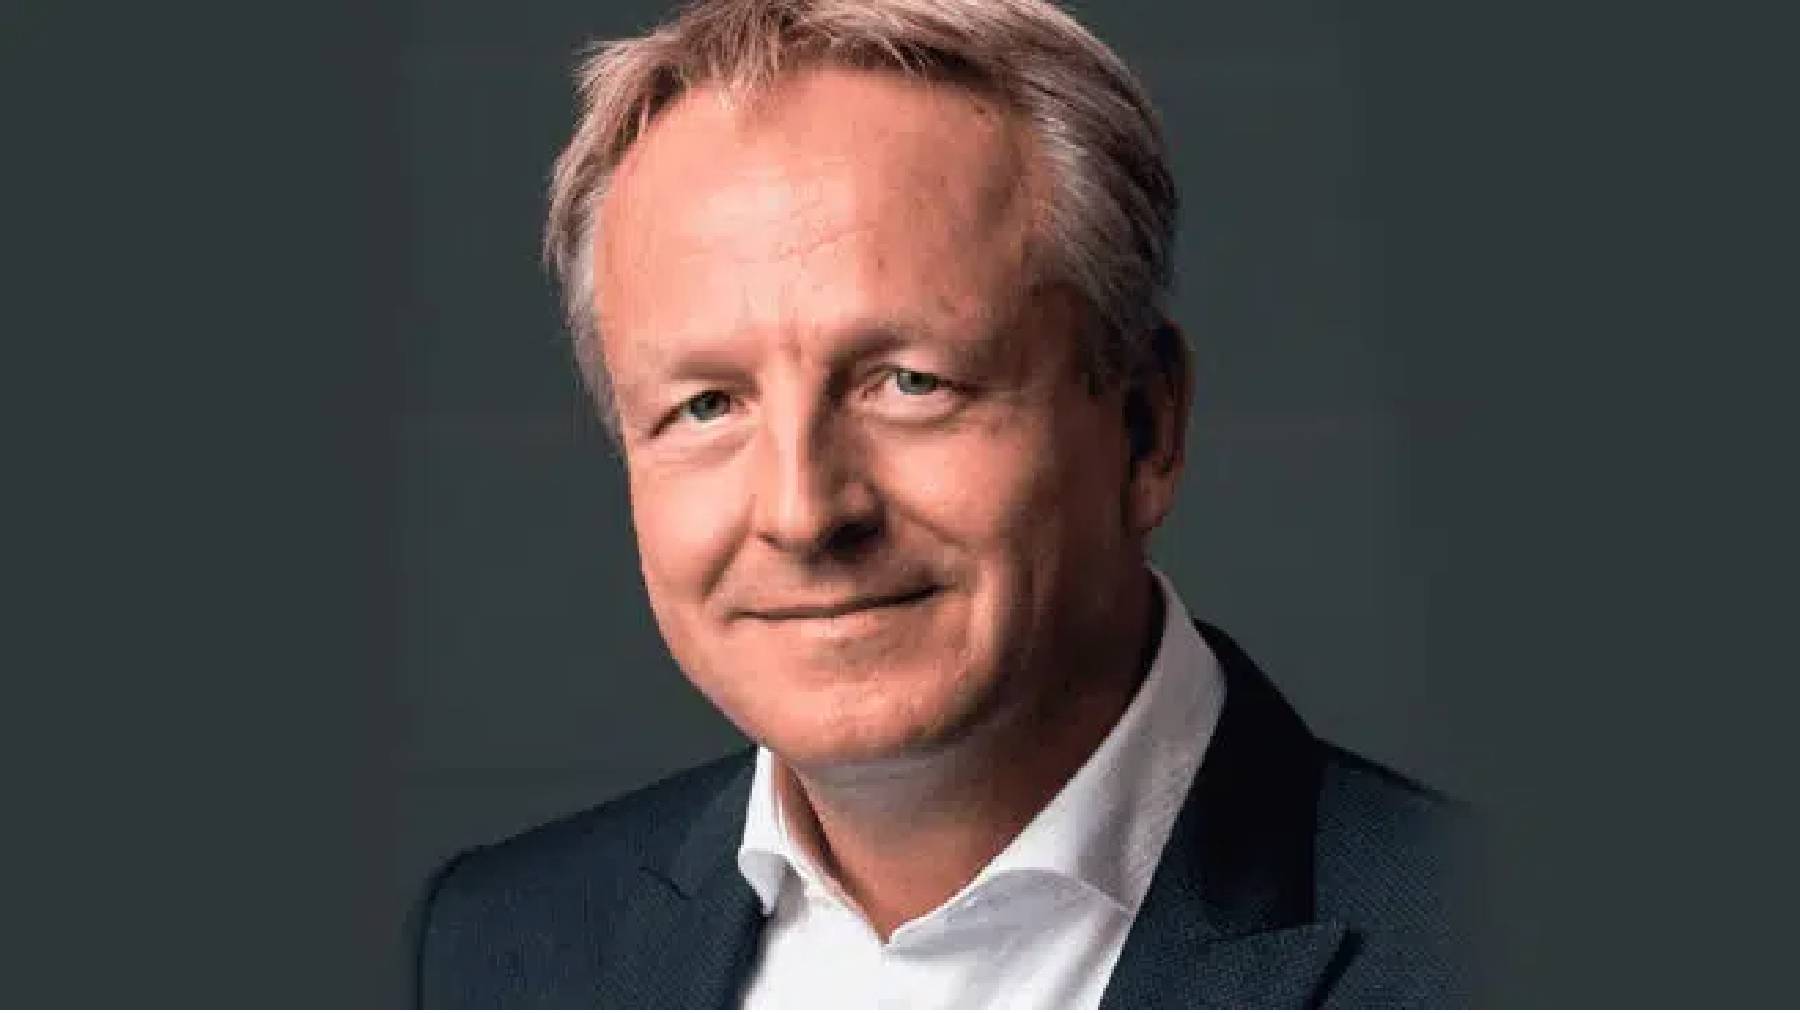 Maarten Wetselaar, nuevo CEO de Cepsa